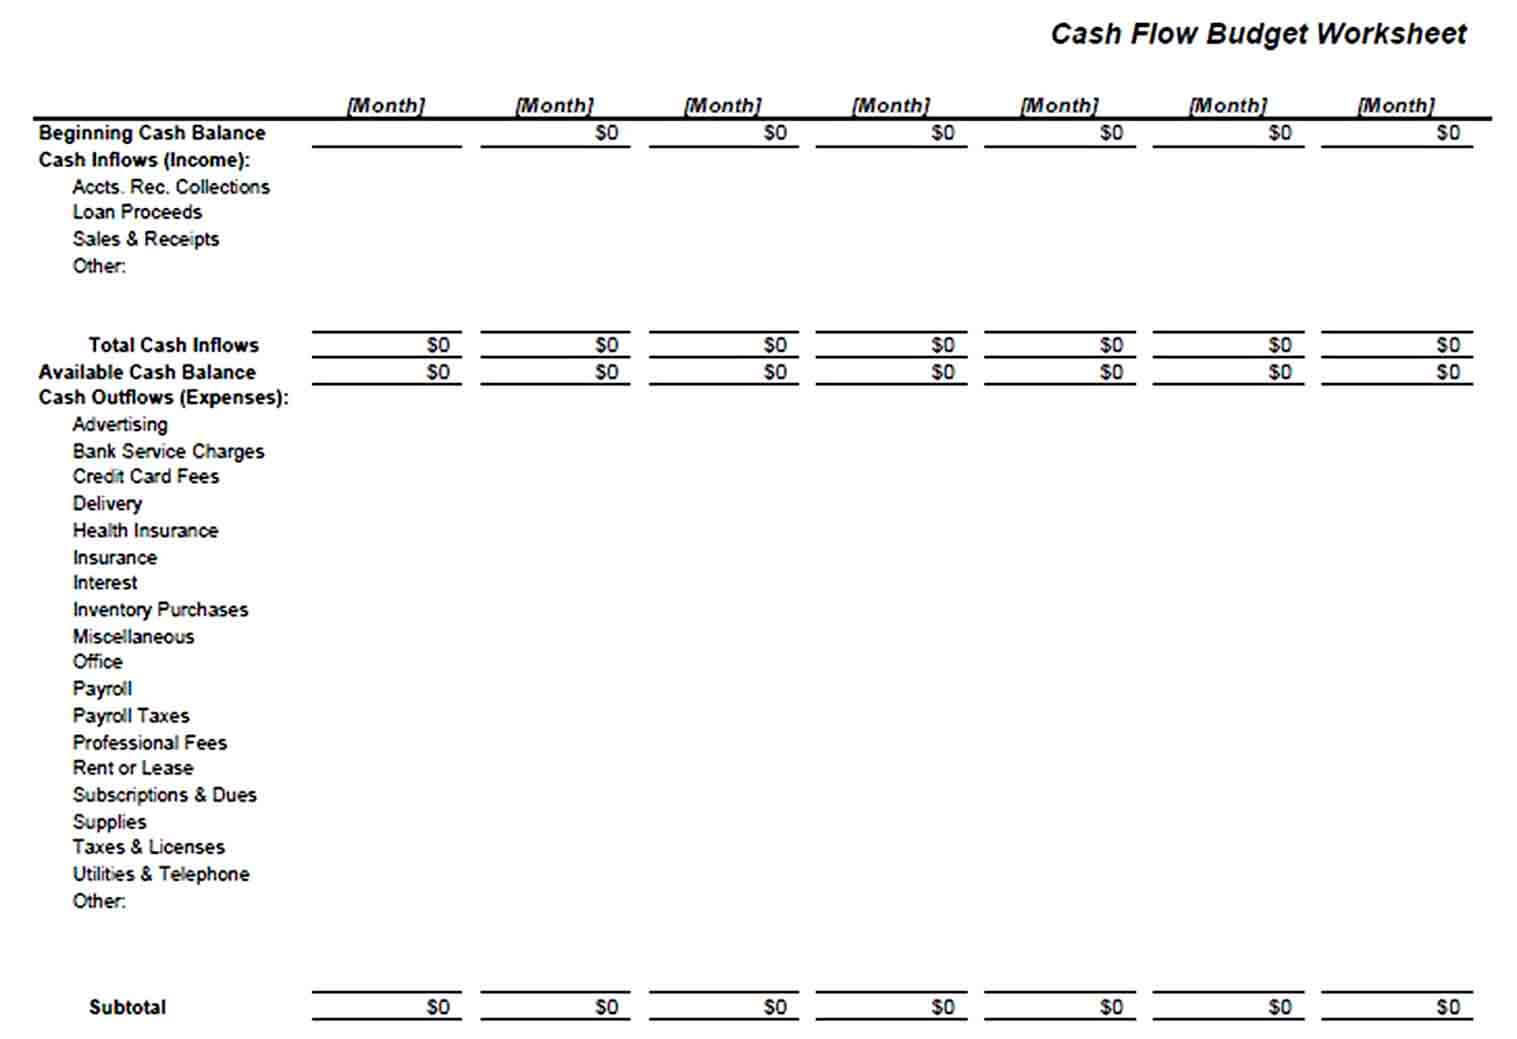 Cash Flow Budget Worksheet